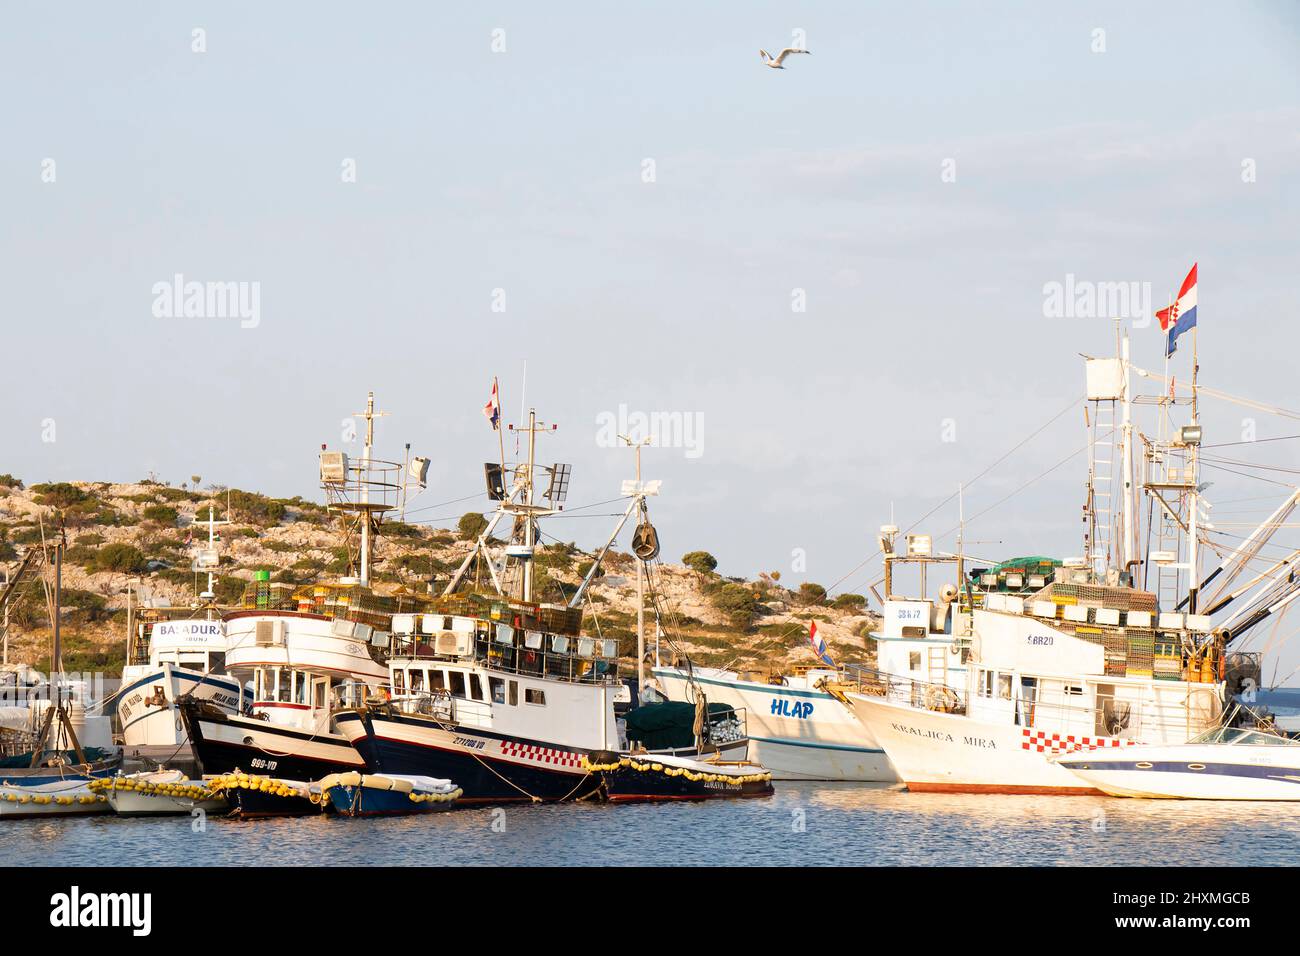 Tribunj, Croacia - 23 de agosto de 2021: Barcos de pesca en el puerto Foto de stock